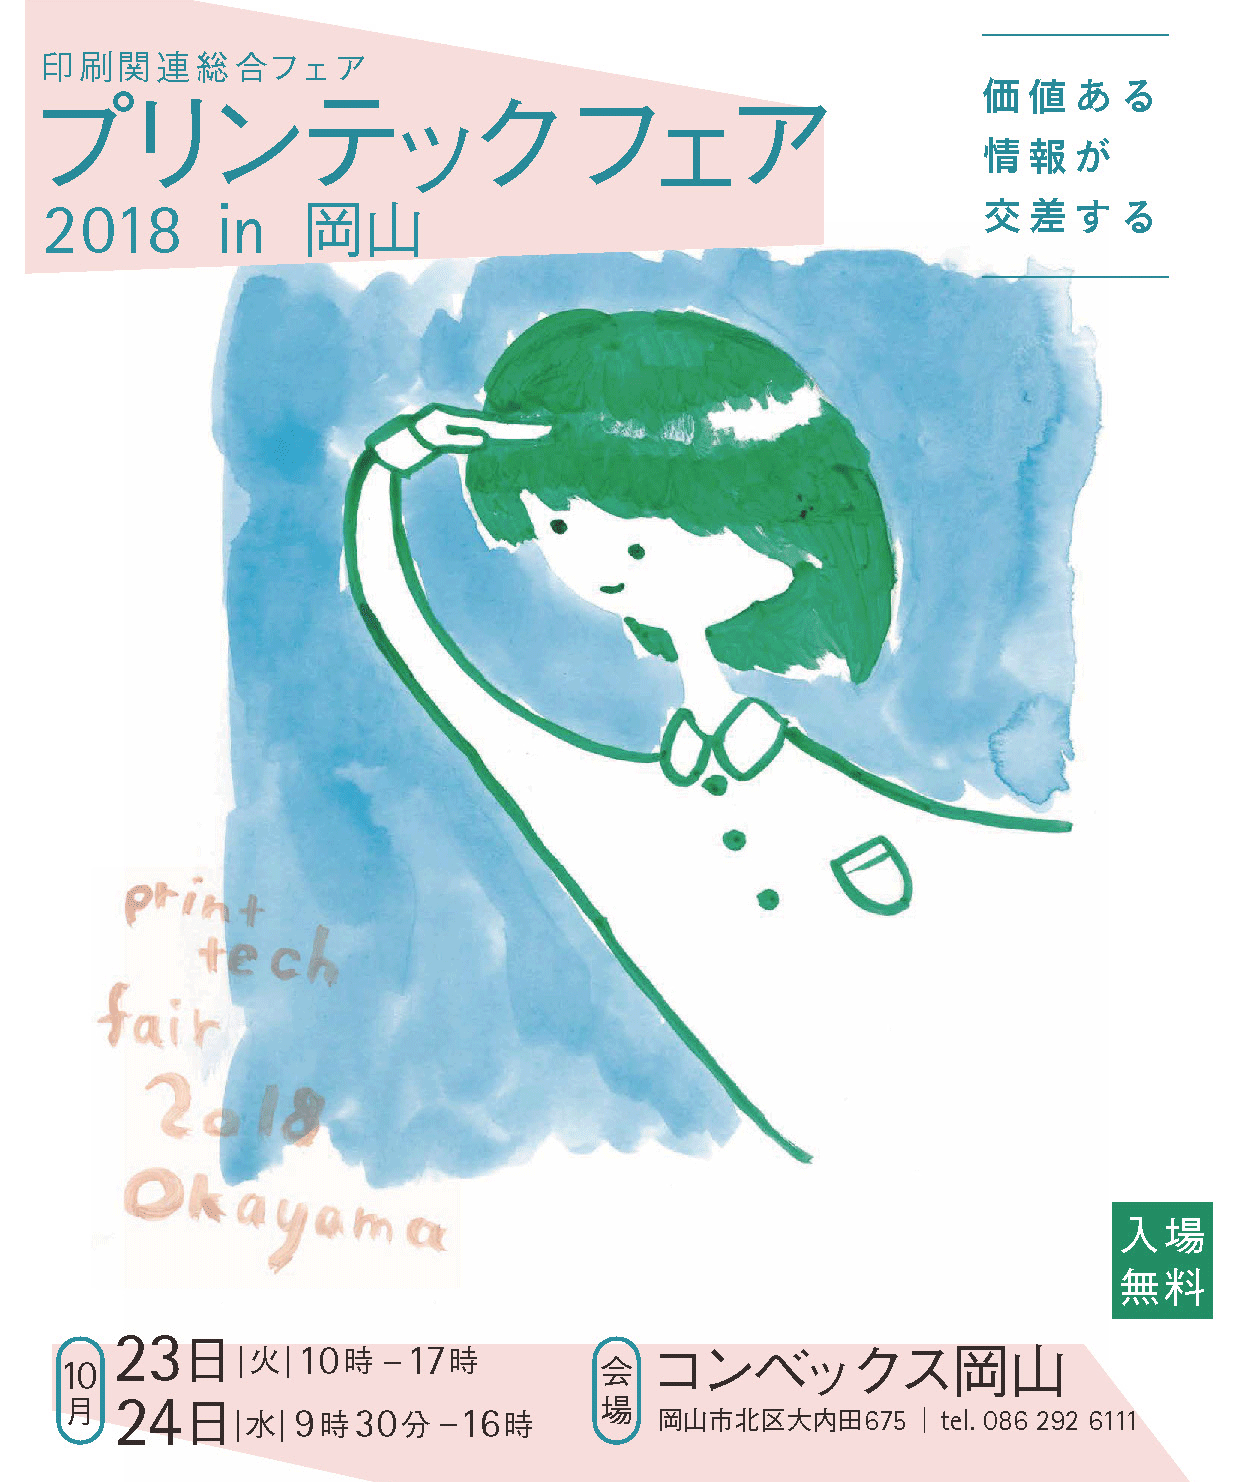 「プリンテックフェア2018in岡山」に出展します！!